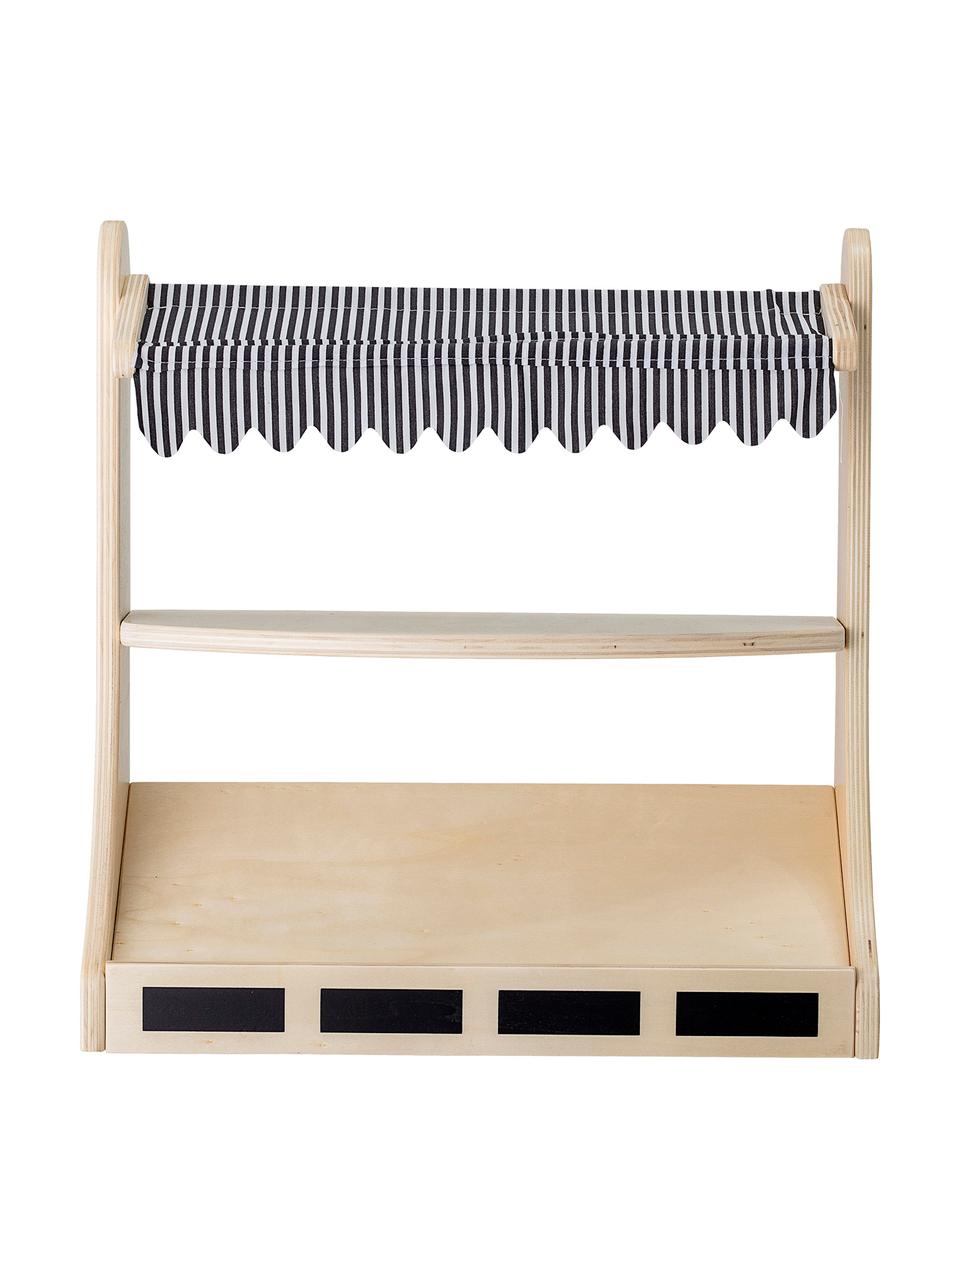 Stoisko sklepowe Minishopper, Stelaż: drewno warstwowe, metal, Drewno naturalne, czarny, biały, S 40 x W 41 cm